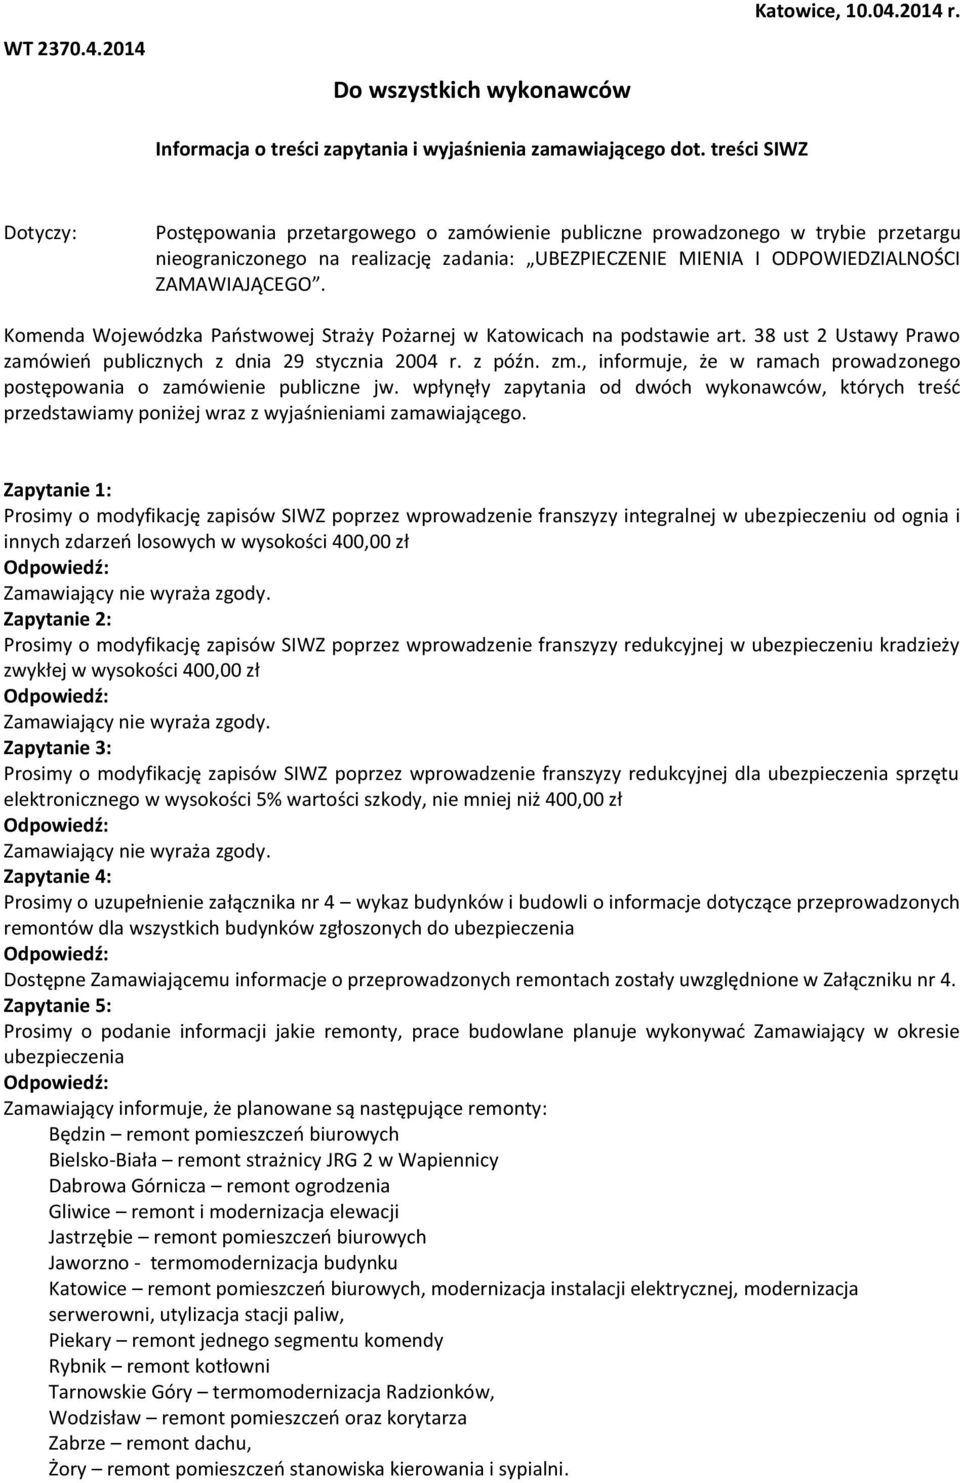 Komenda Wojewódzka Państwowej Straży Pożarnej w Katowicach na podstawie art. 38 ust 2 Ustawy Prawo zamówień publicznych z dnia 29 stycznia 2004 r. z późn. zm.